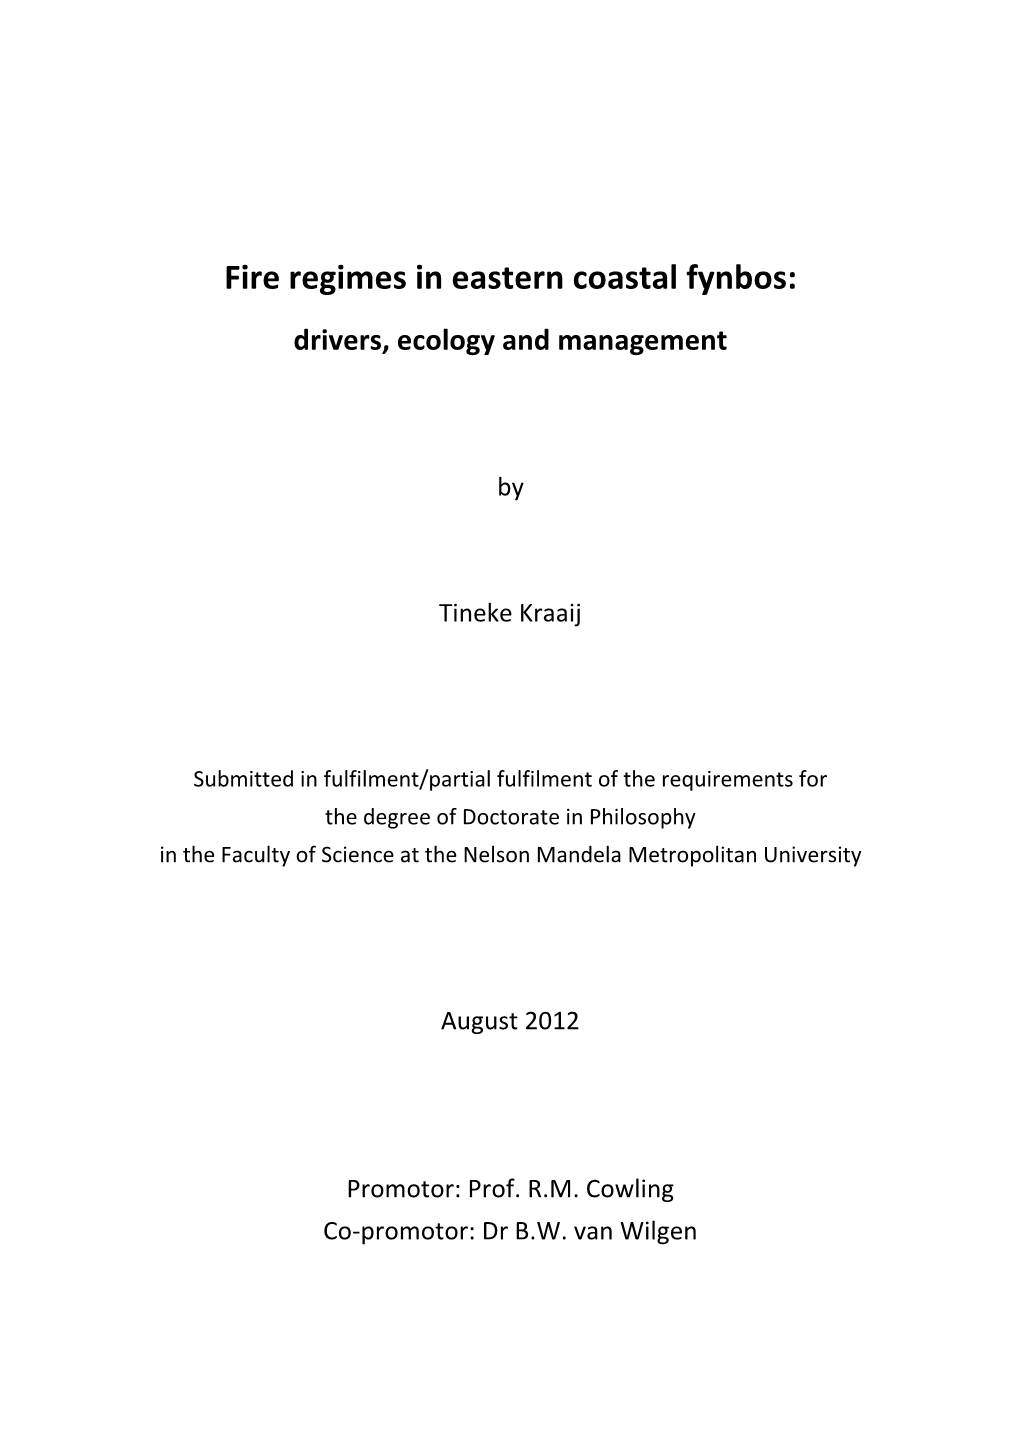 Fire Regimes in Eastern Coastal Fynbos